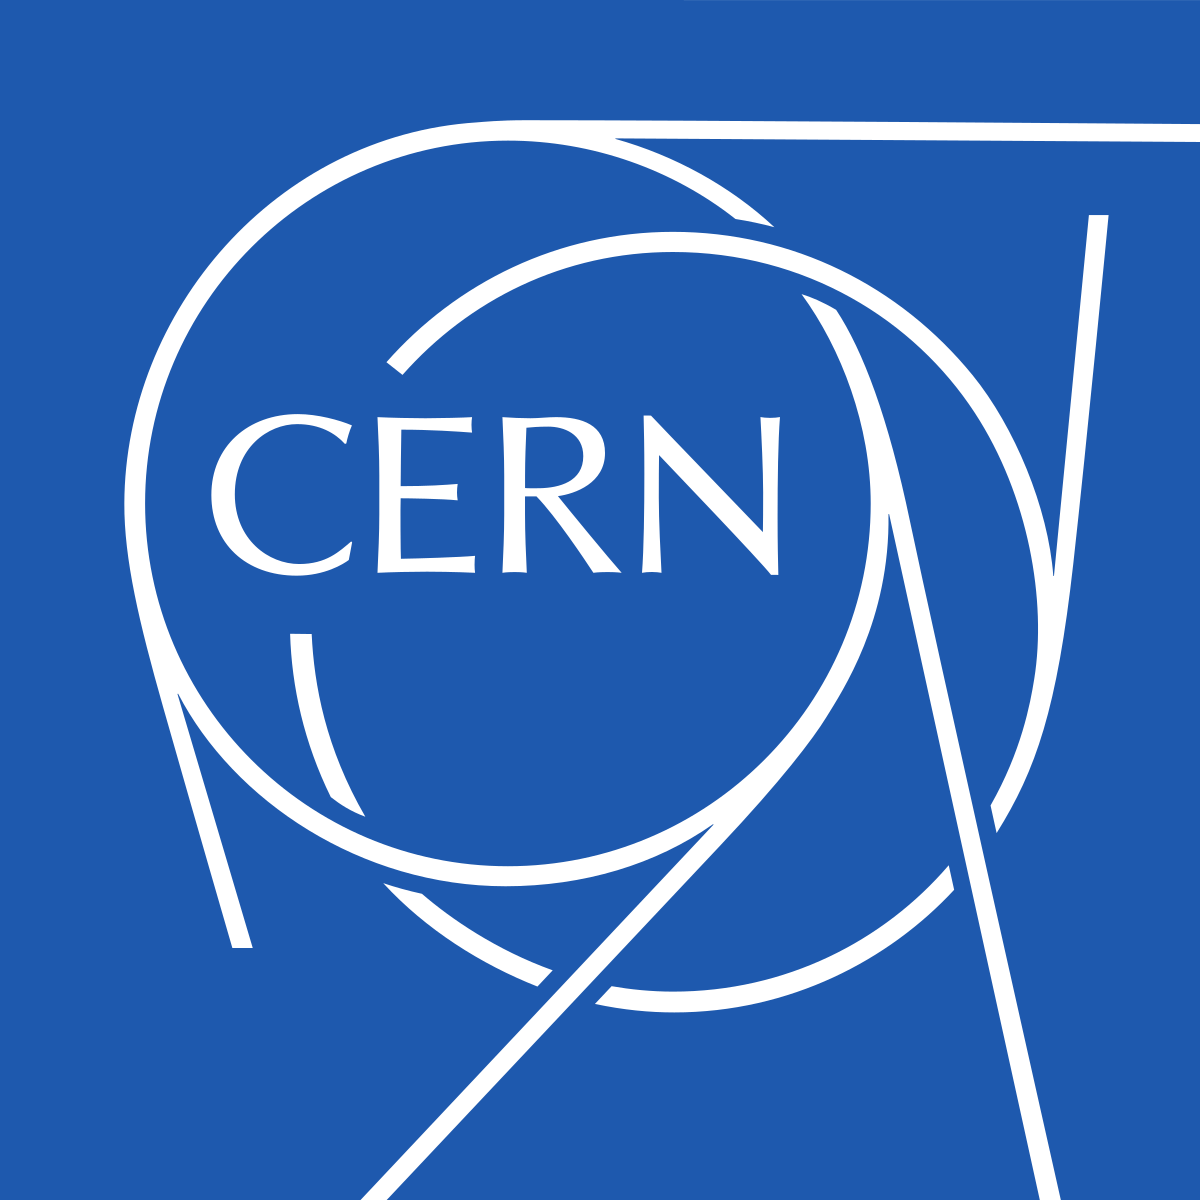 evropaikos-organismos-pyrinikon-erevnon-cern-logo